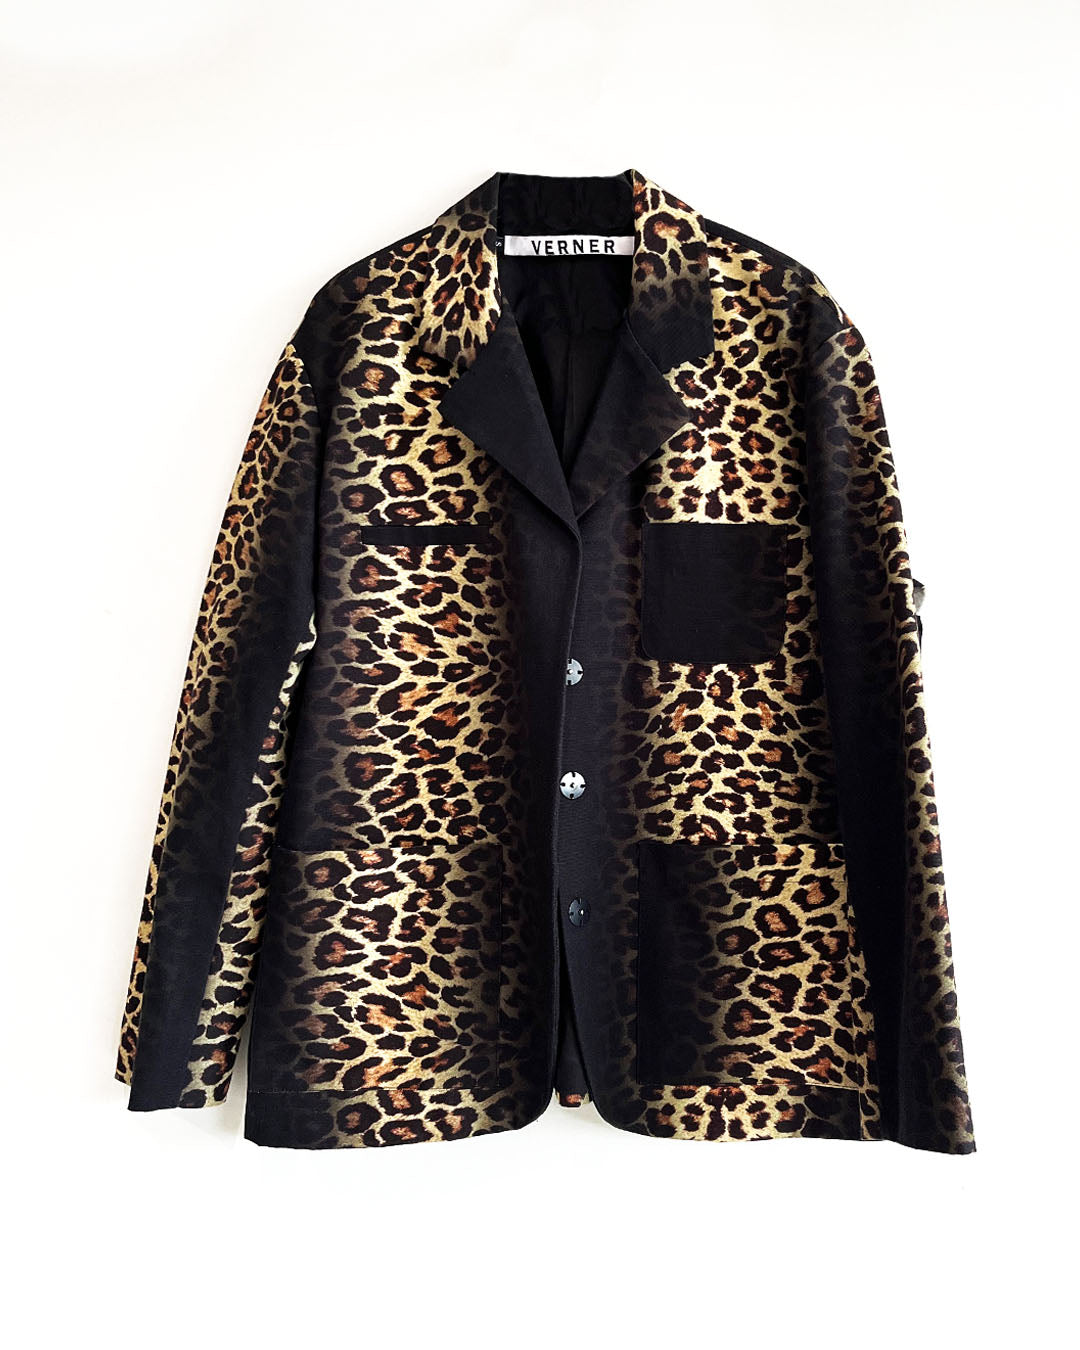 Leopard Suit Jacket